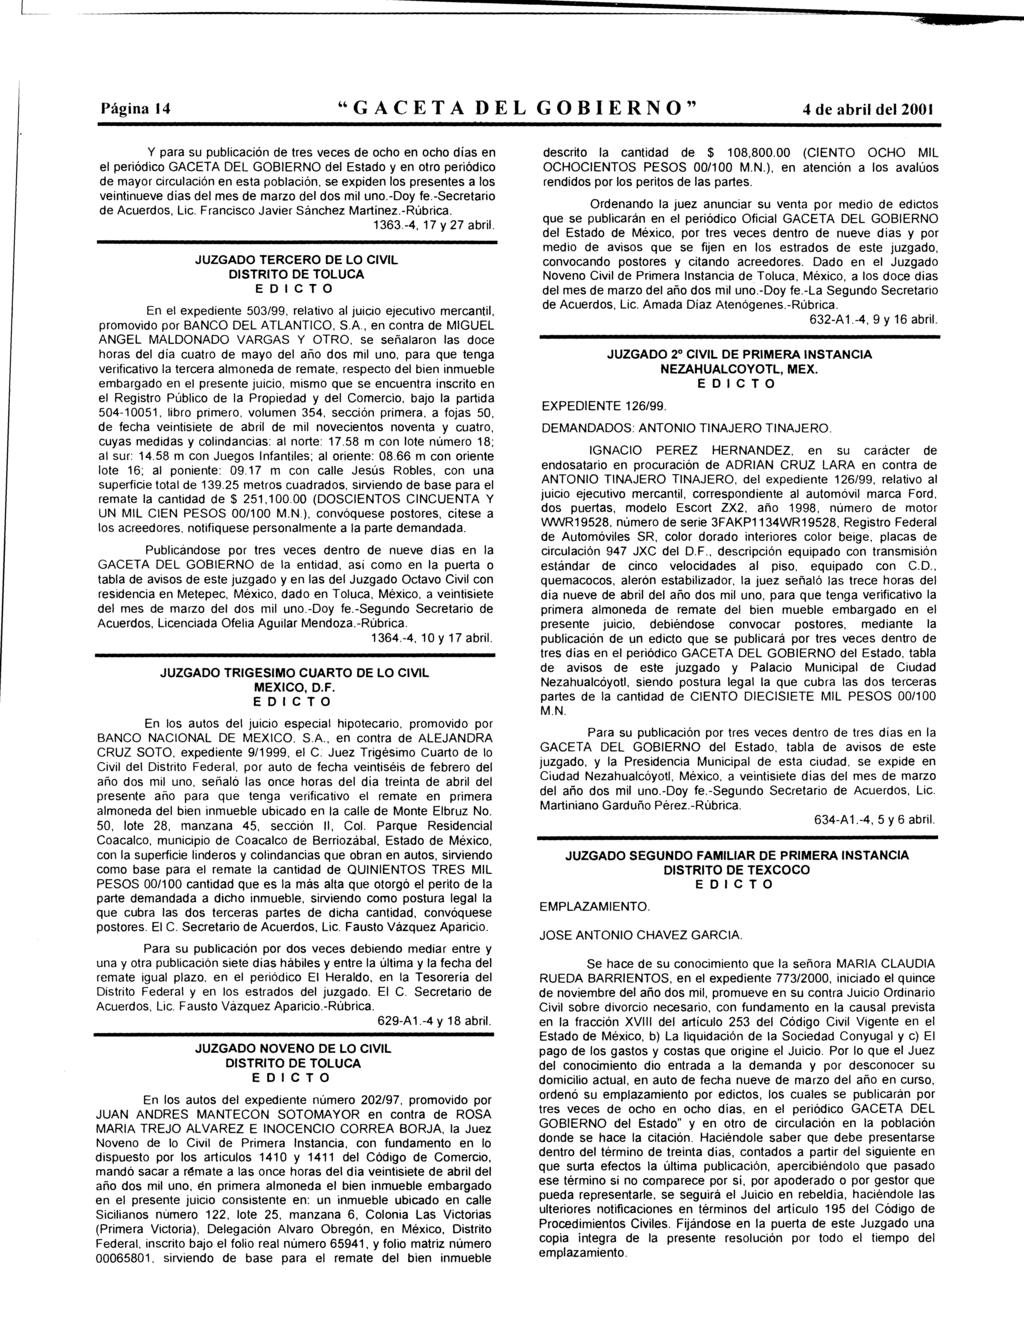 Página 14 "GACETA DEL GOBIERNO" 4 de abril del 2001 Y para su publicación de tres veces de ch en ch días en el periódic GACETA DEL GOBIERNO del Estad y en tr periódic de mayr circulación en esta